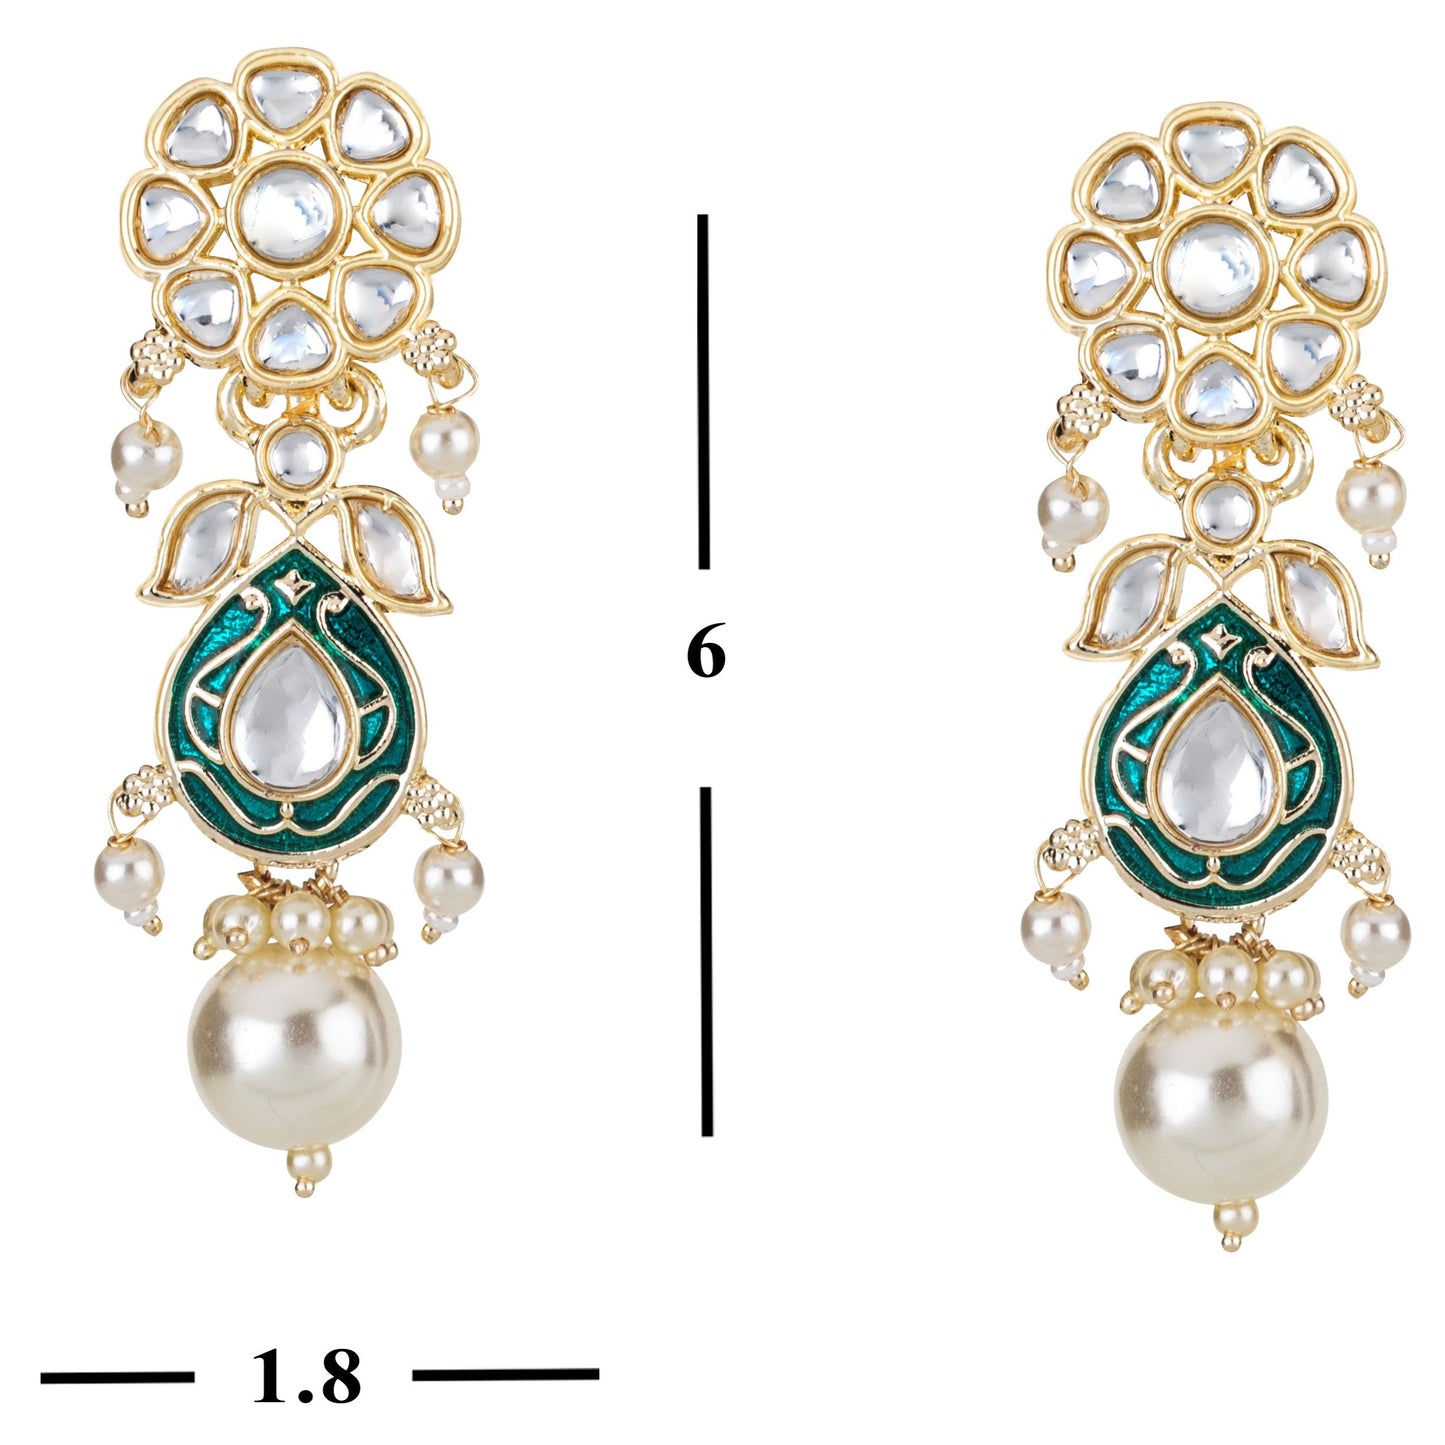 Bdiva 18K Gold Plated Green Kundan Meenakari Drop Earrings with Semi Cultured Pearls.